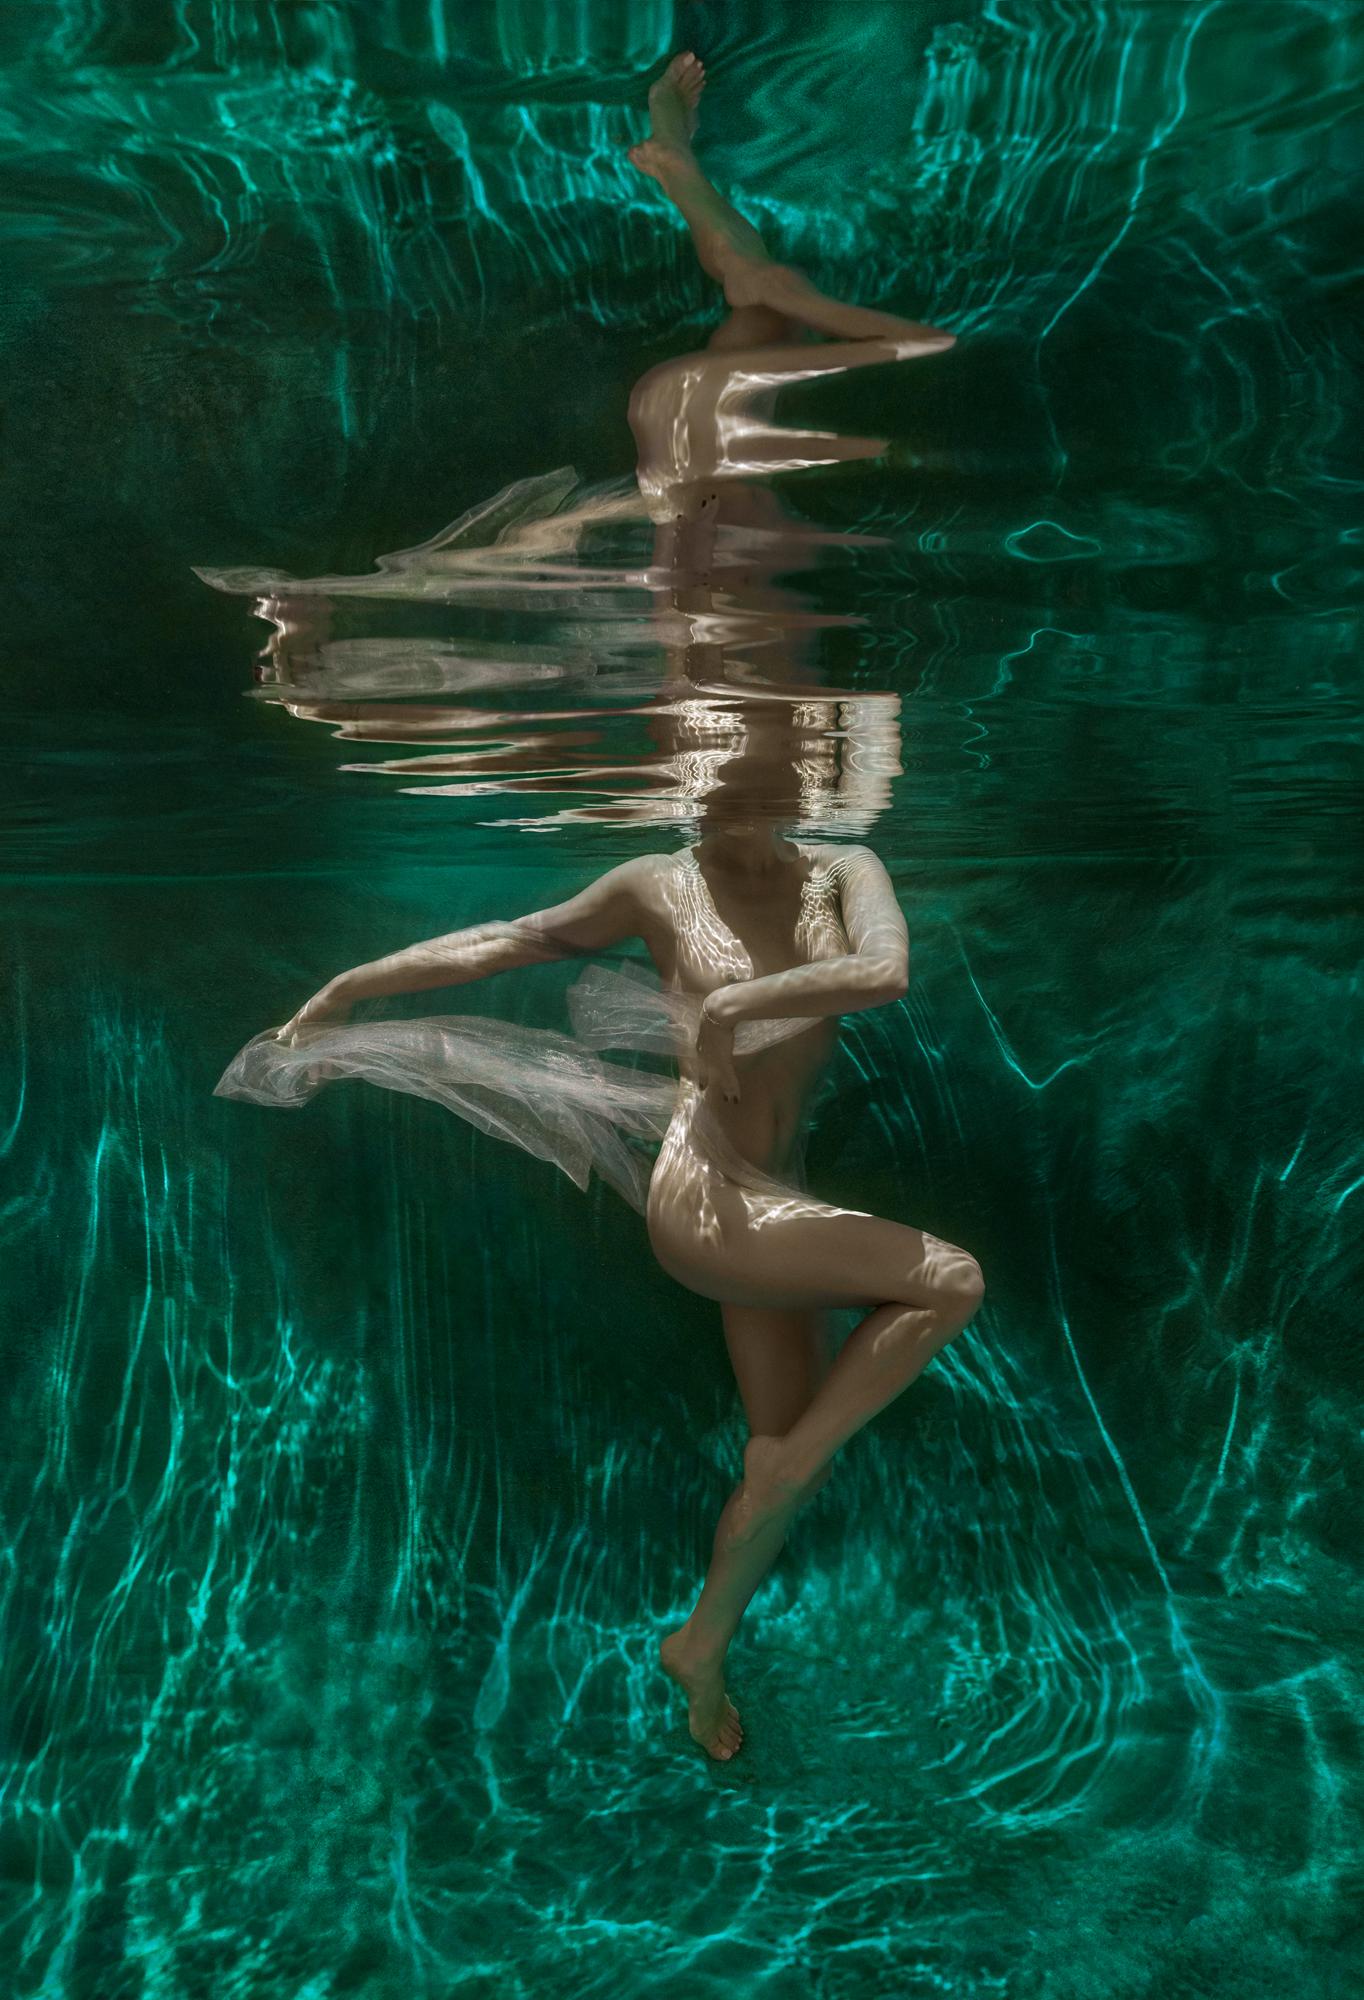 Мalachite Cave - underwater photograph - archival pigment print 24x18"